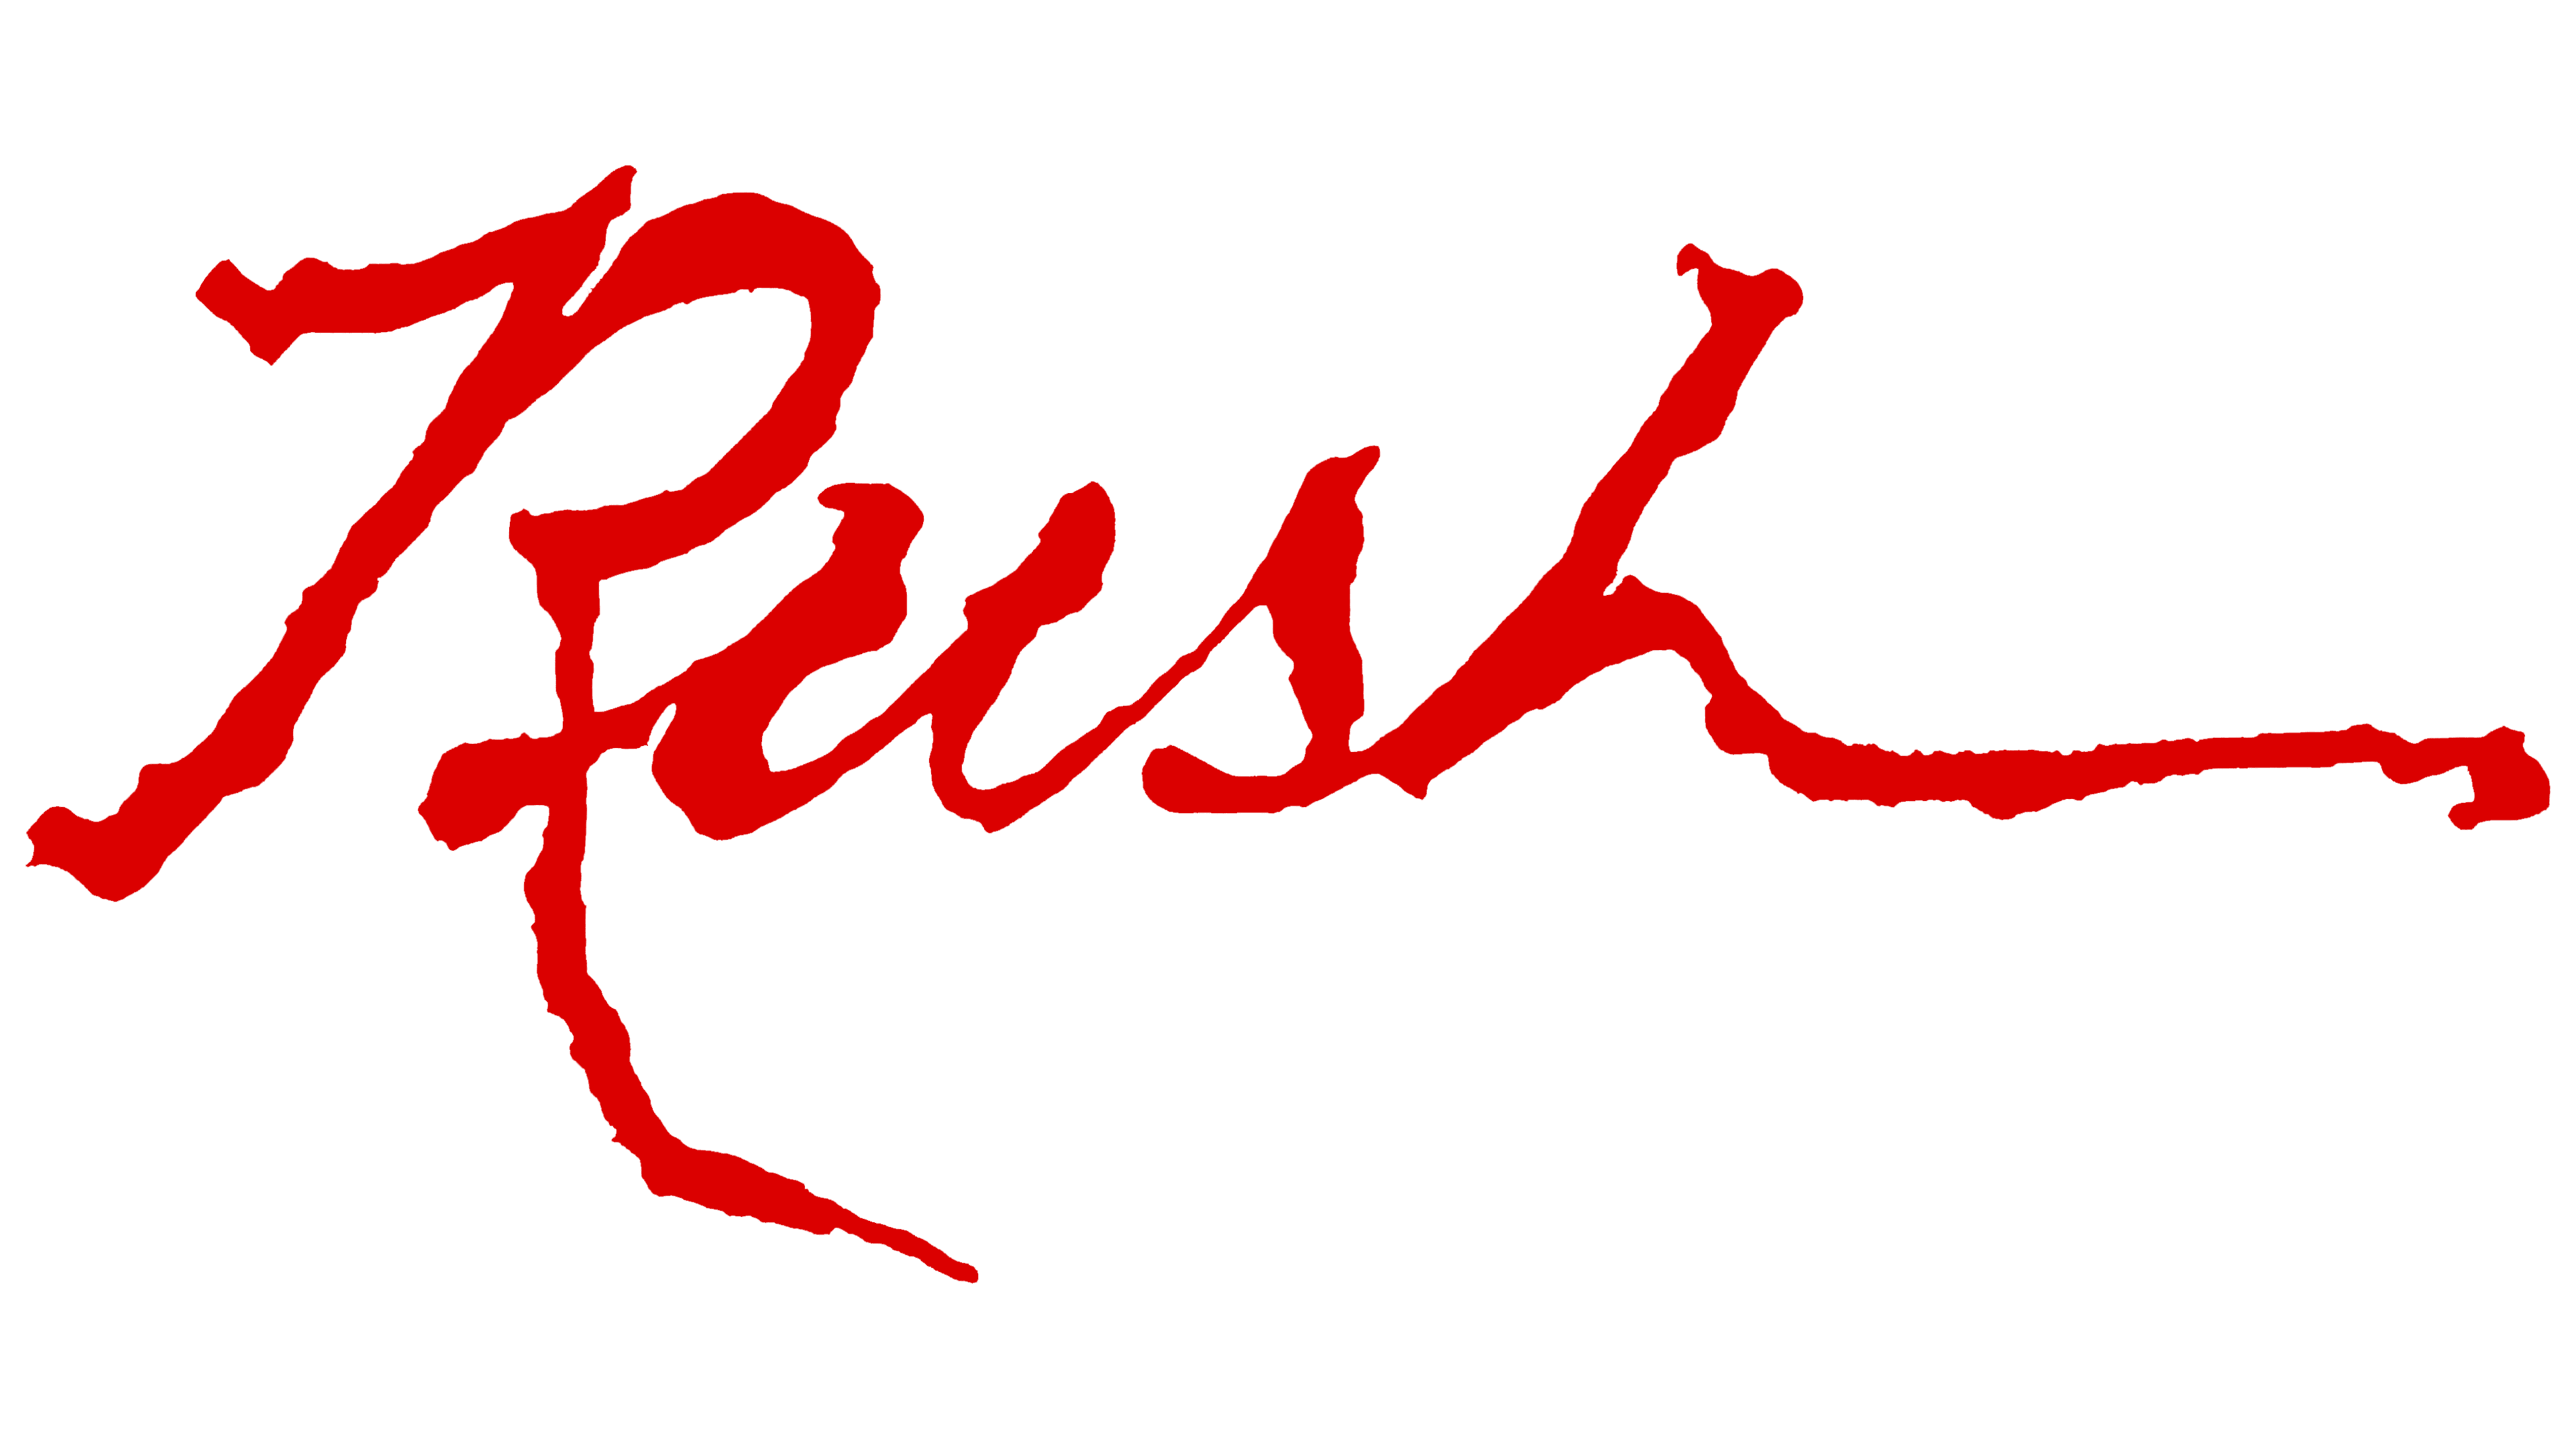 Can best represent. Rush Band. Rush logo. The Rush смесь логотип.